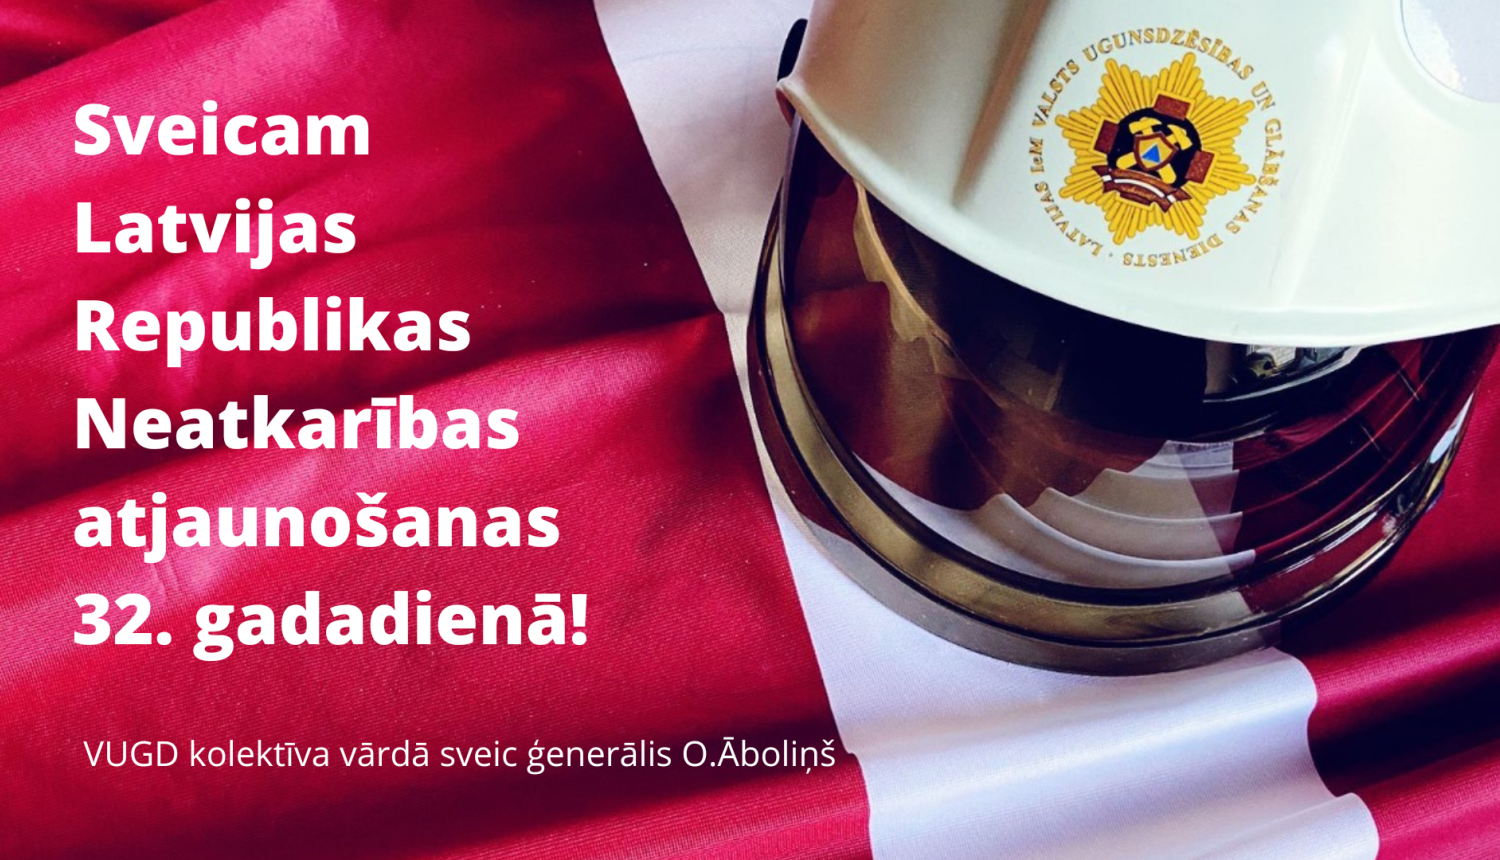 Apsveikums: "Sveicam Latvijas Republikas Neatkarības atjaunošanas 32.gadadienā! VUGD kolektīva vārdā sveic ģenerālis O.Āboliņš". Fonā redzams Latvijas valsts karoga fragments un VUGD ugunsdzēsēju glābēju ķivere baltā krāsā